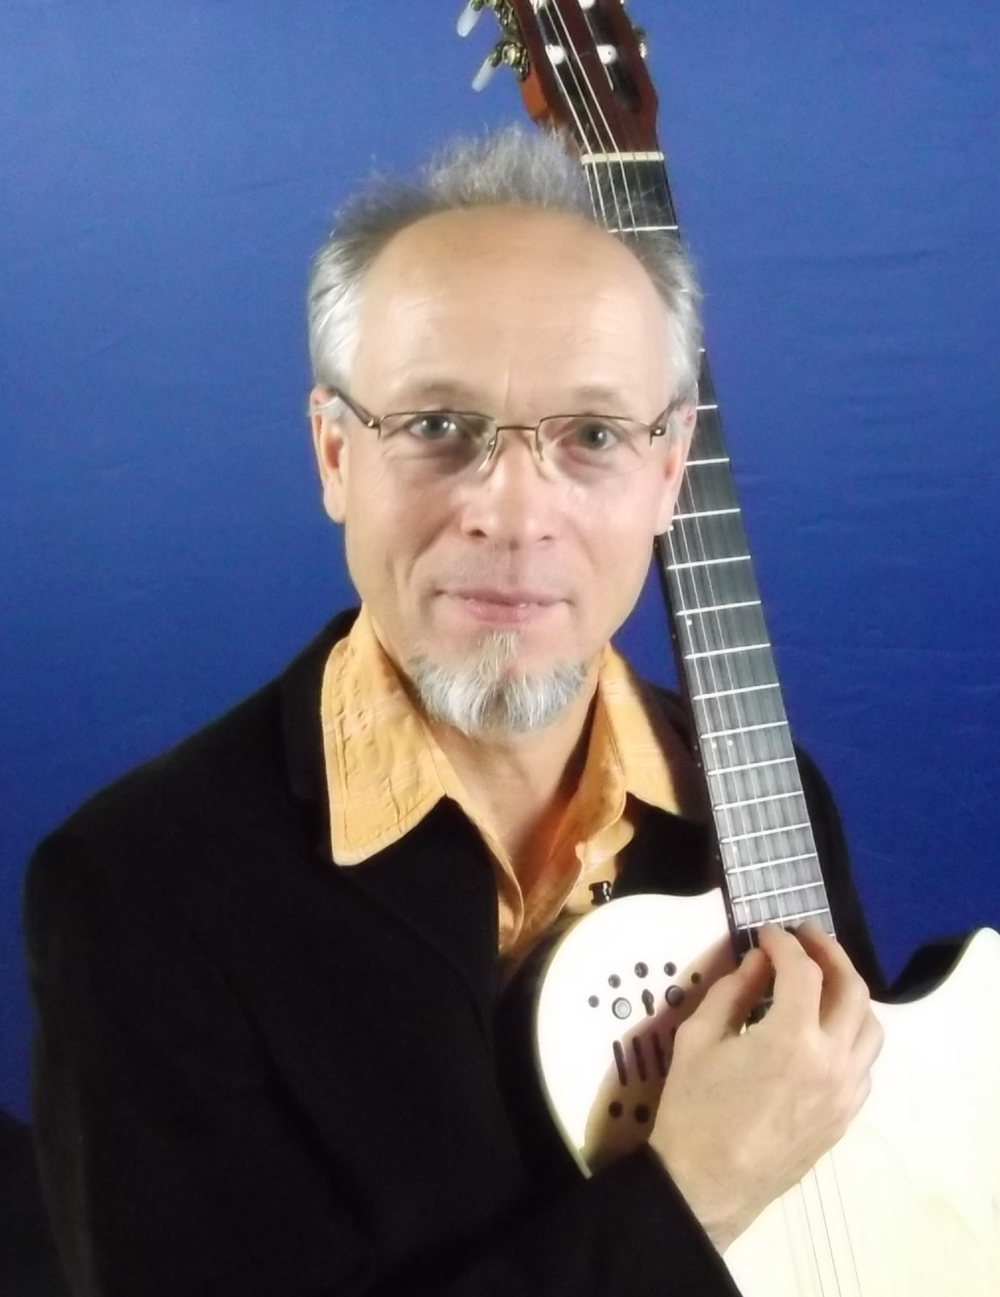 Unterricht für akustische Gitarre Ukulele